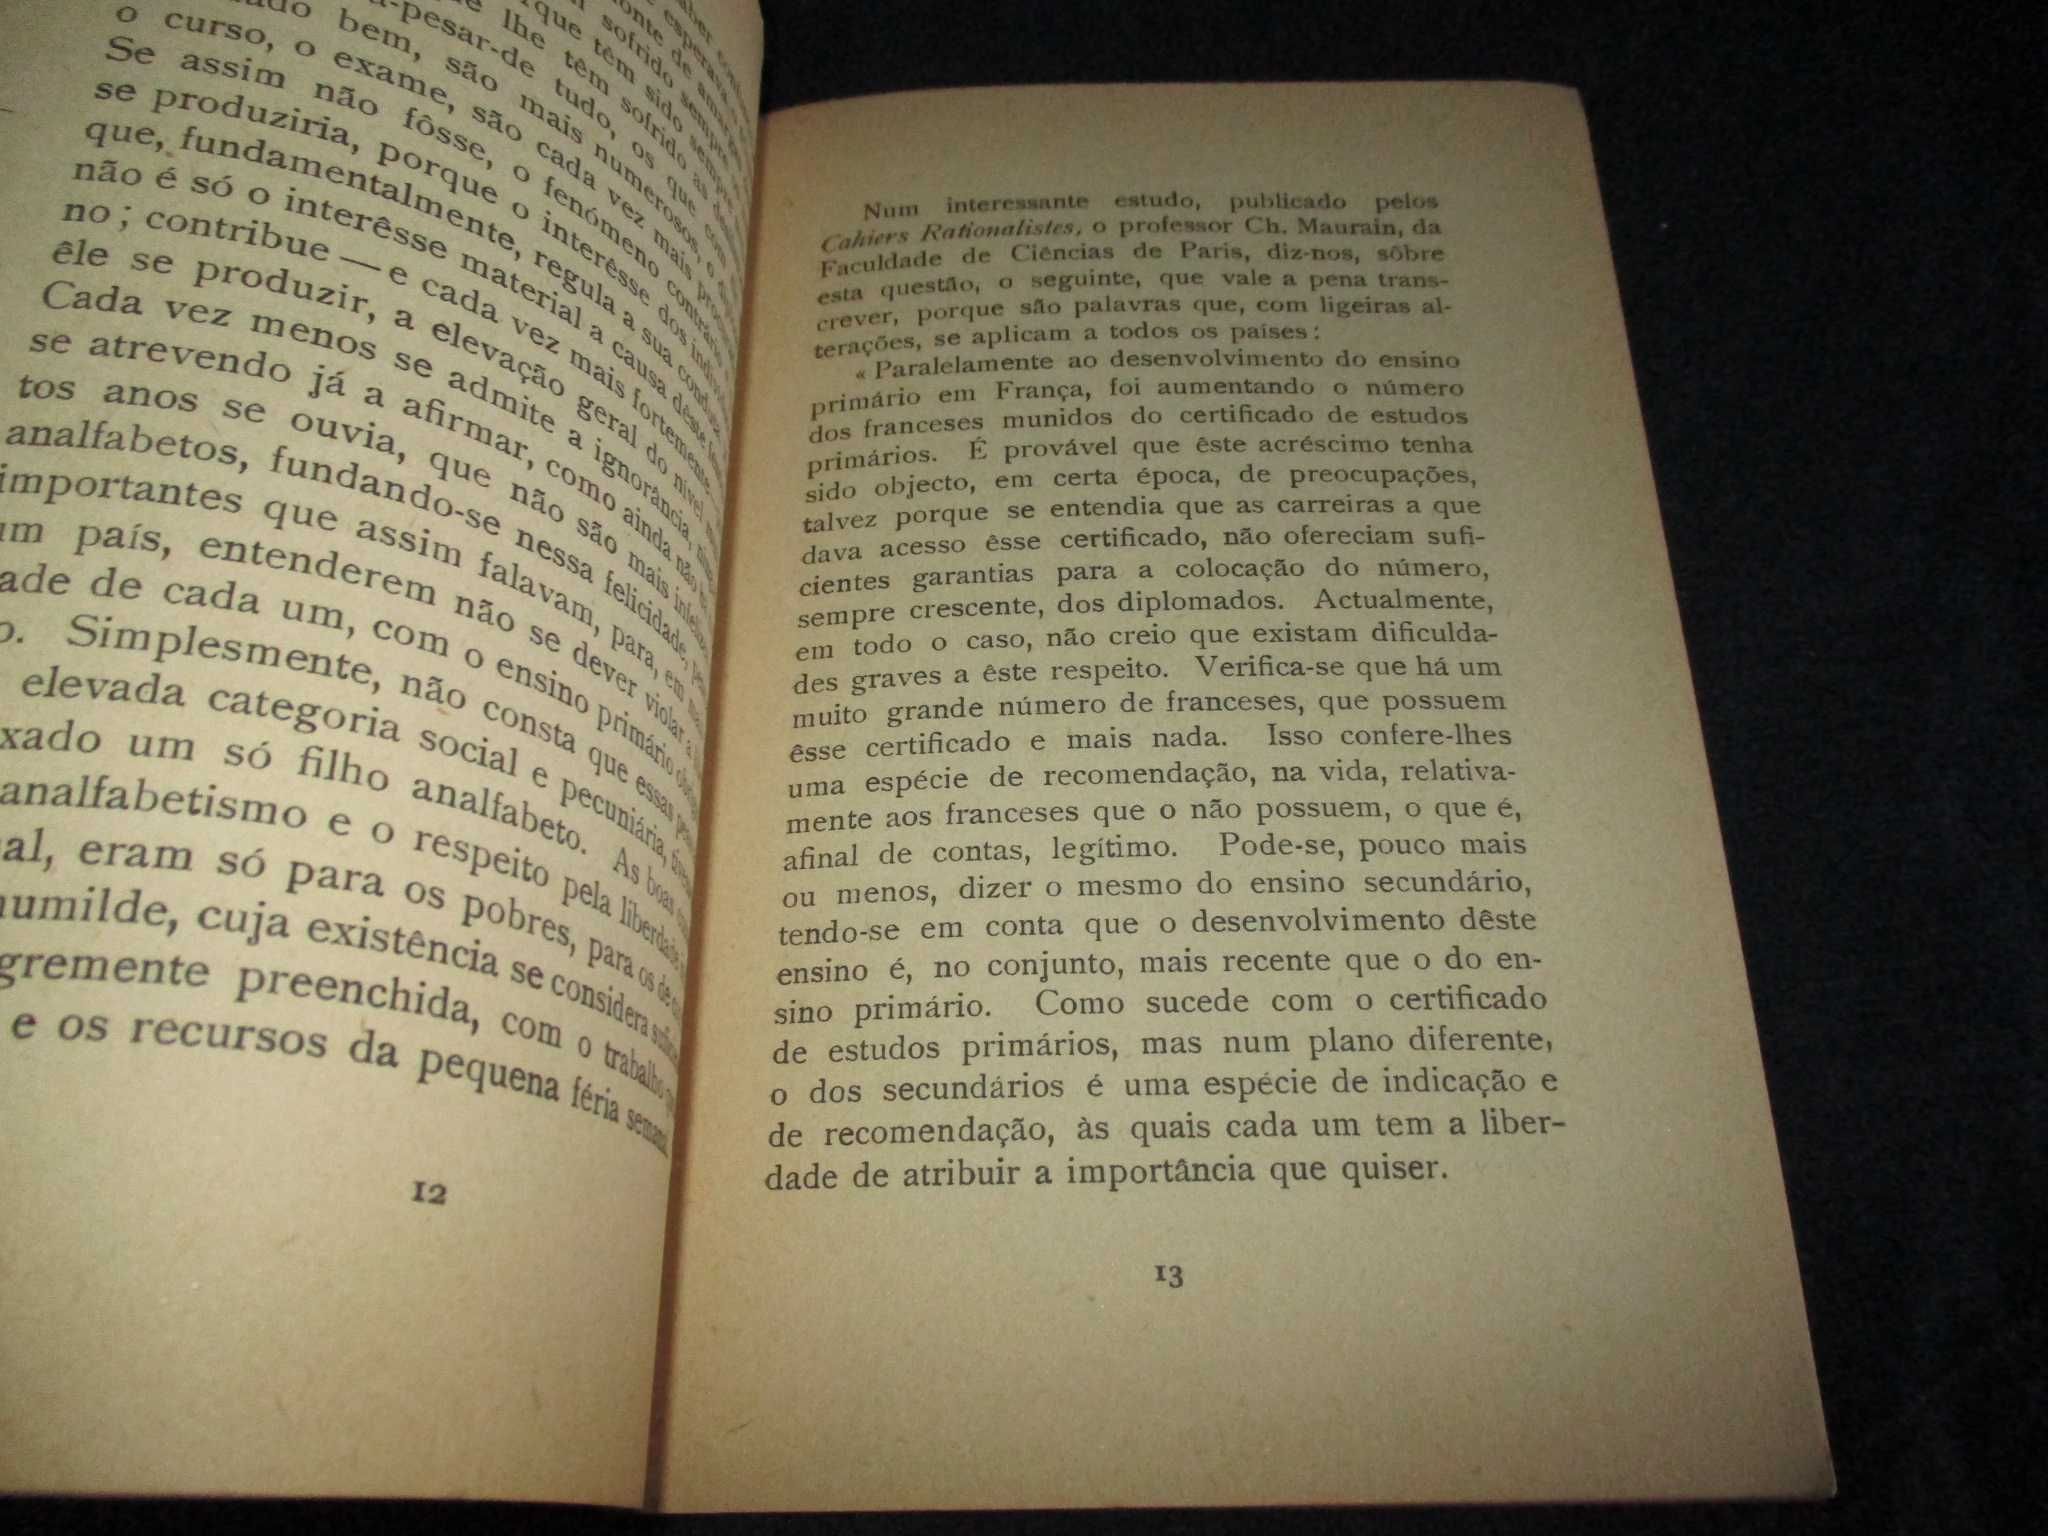 Livro O Destino do Proletariado Intelectual Emílio Costa 1935